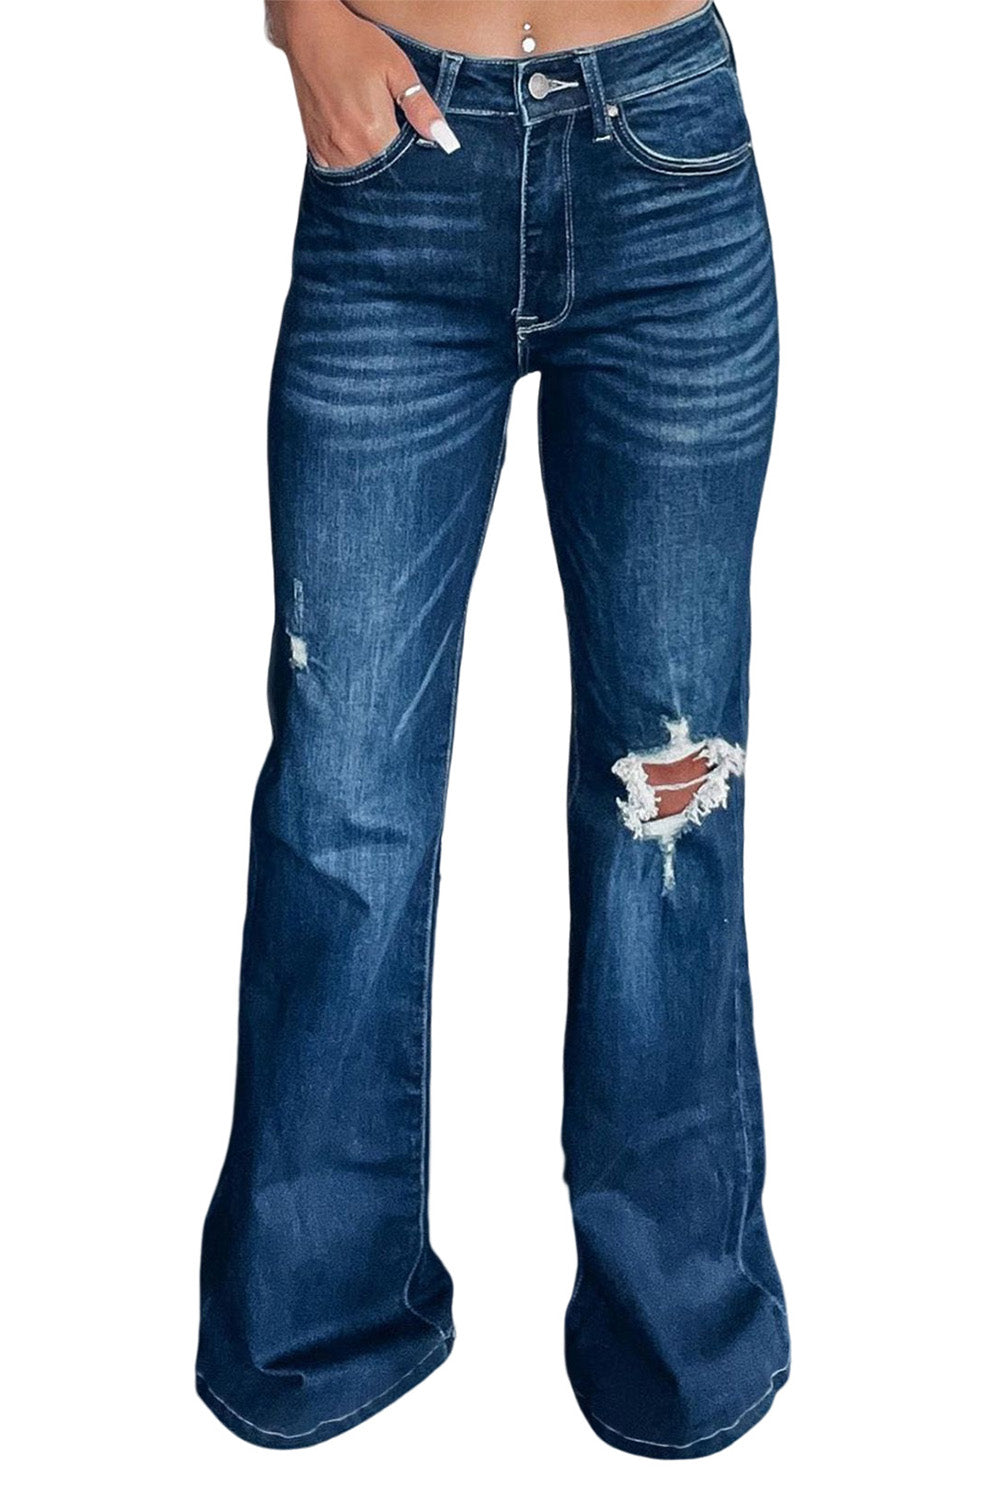 Wide leg Distressed Flare Jeans  31-32" inseam - flared, flared jeans, flaredjeans, flares, jeans, ripped, ripped jeans, wide leg pants -  - Baha Ranch Western Wear